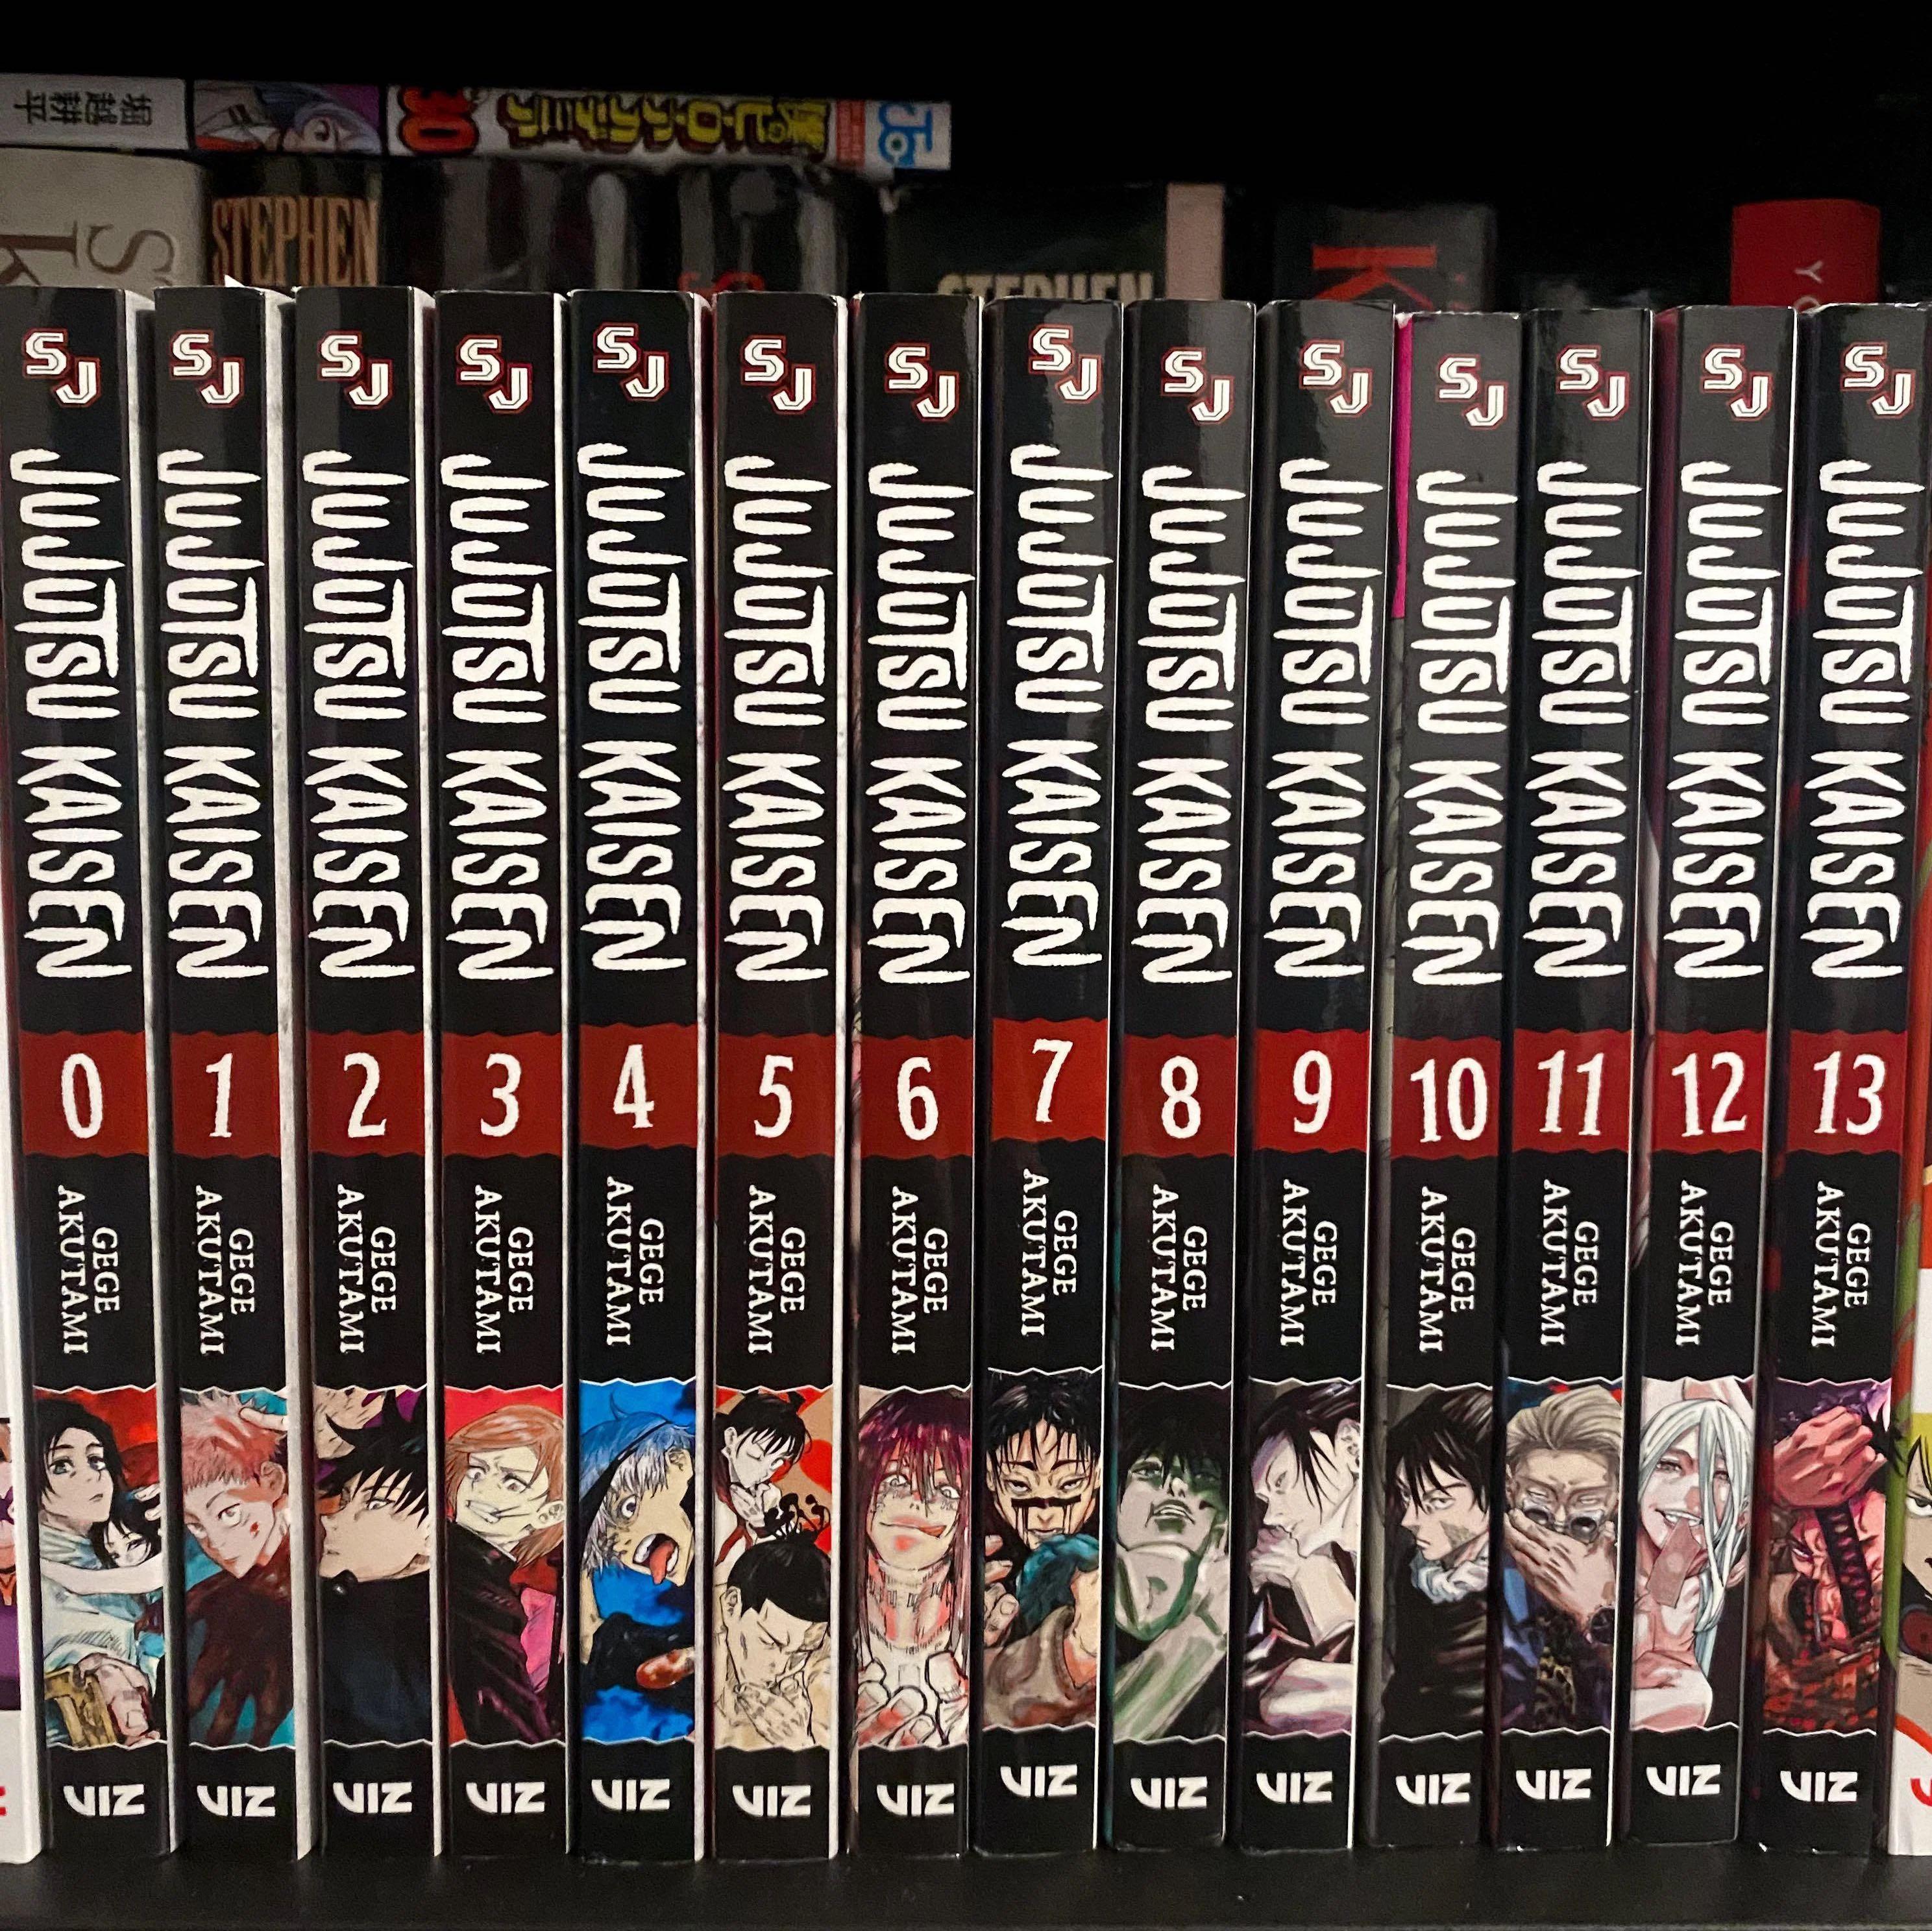 Jujutsu Kaisen Manga Volumes 0 15 Set By Gege Akutami Lagoagriogobec 4538